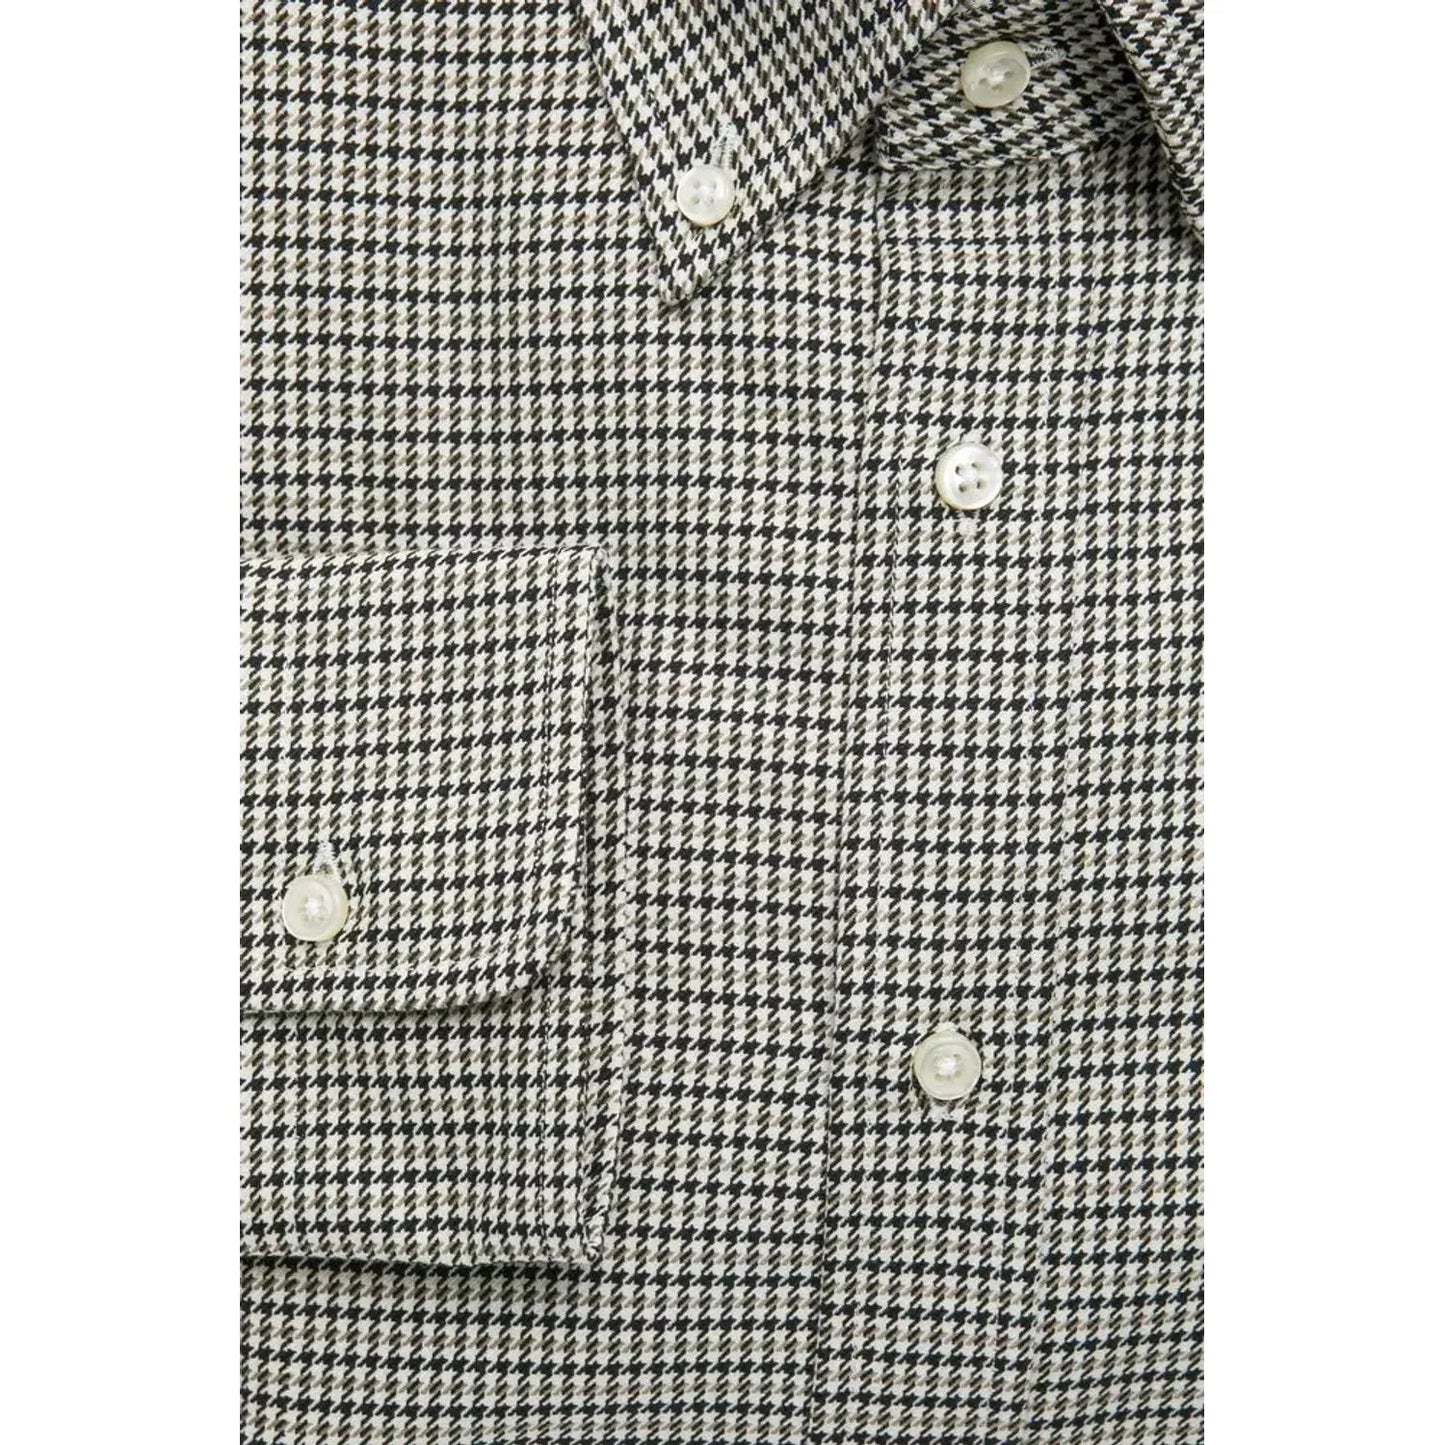 Robert Friedman Beige Cotton Button Down Regular Shirt beige-cotton-shirt-1 stock_product_image_20448_354859156-15-ba02e462-901.webp